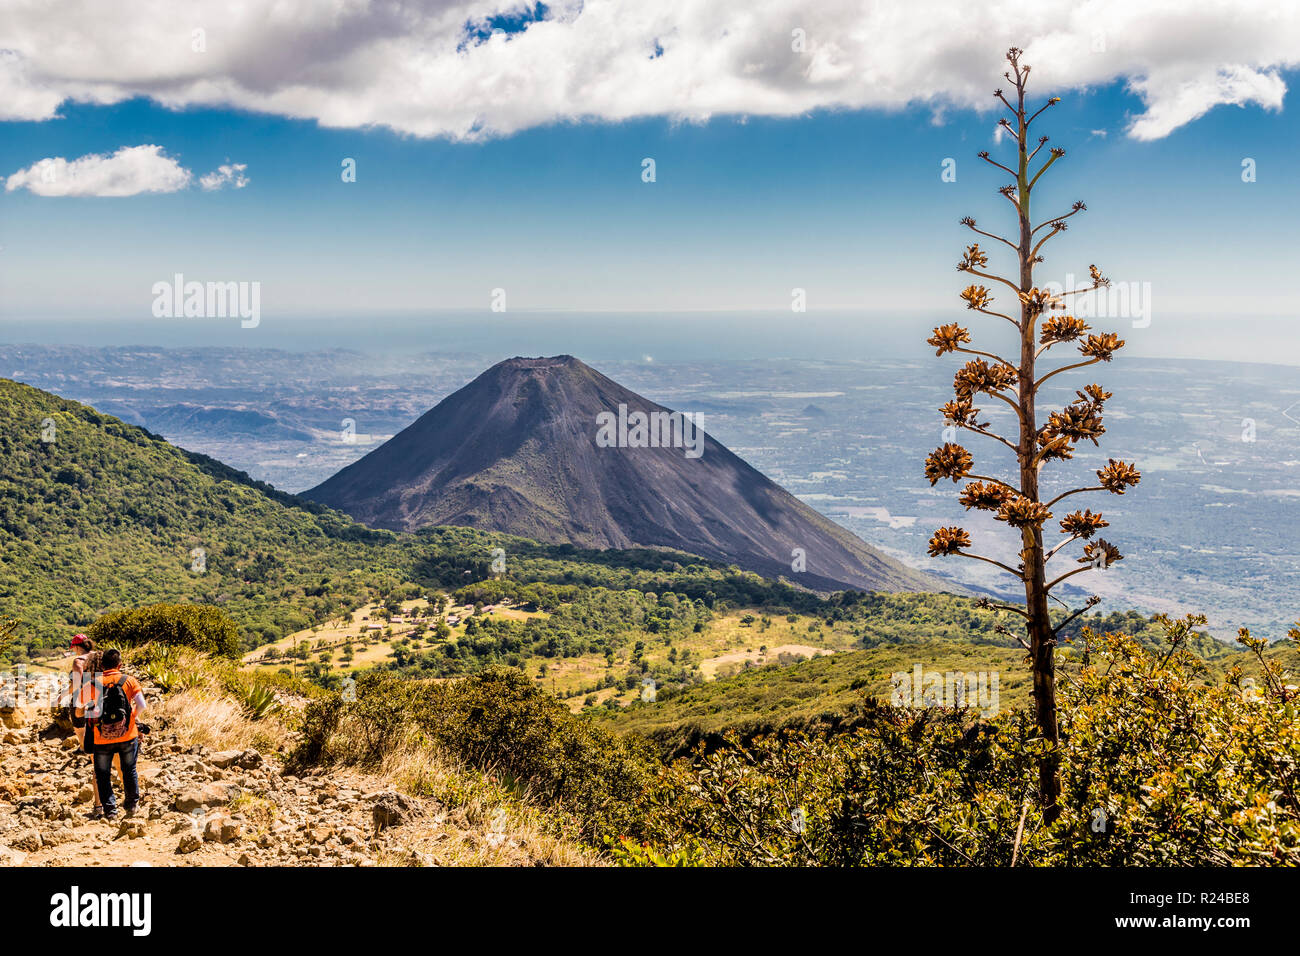 A view of Volcano Izalco and a hiker from Volcano Santa Ana (Ilamatepec ) in Santa Ana, El Salvador, Central America Stock Photo